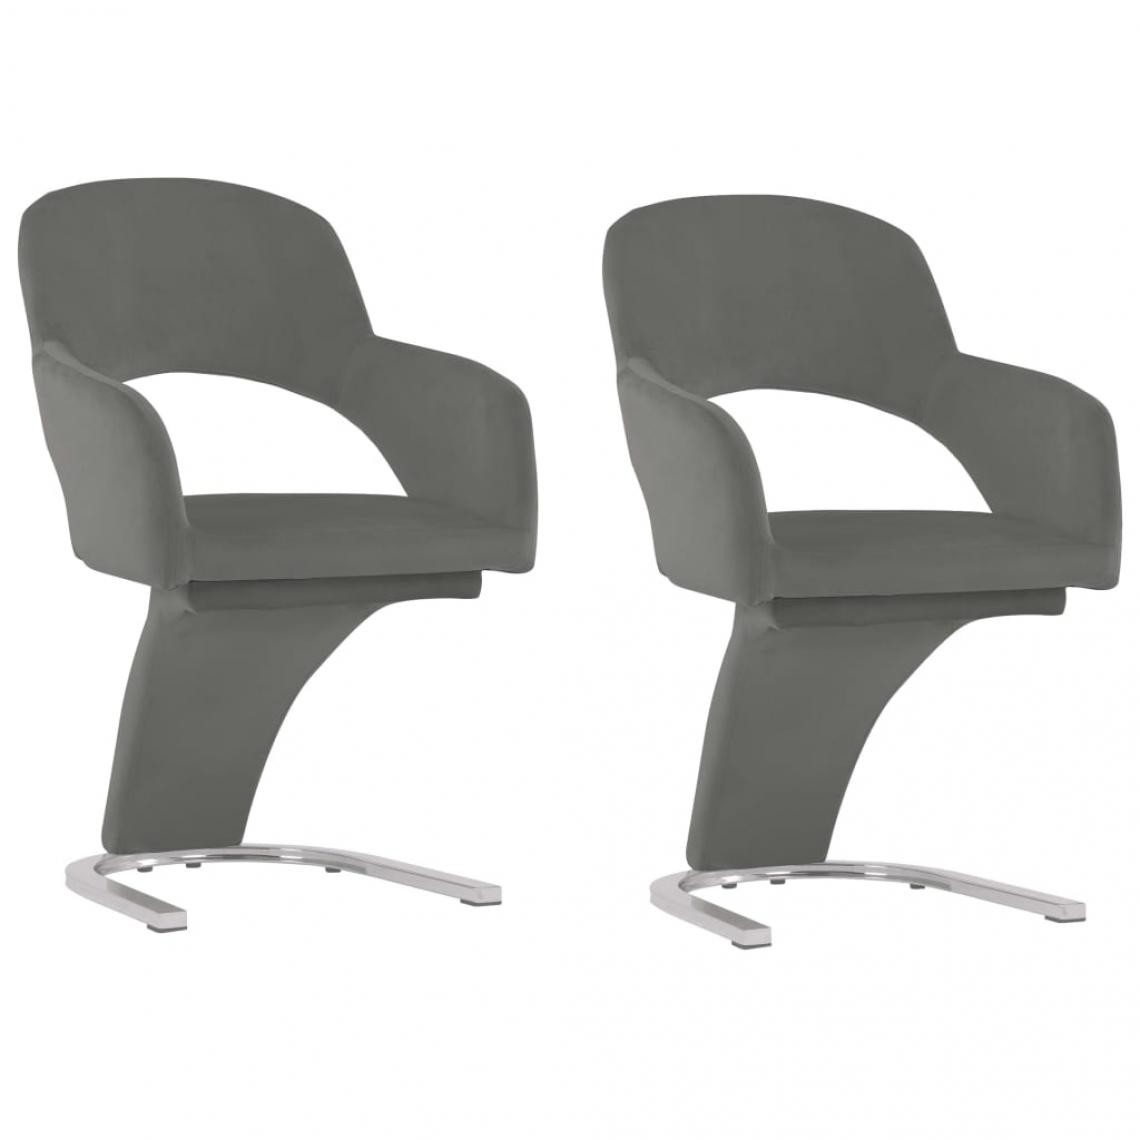 Decoshop26 - Lot de 2 chaises de salle à manger cuisine design moderne velours gris CDS020614 - Chaises